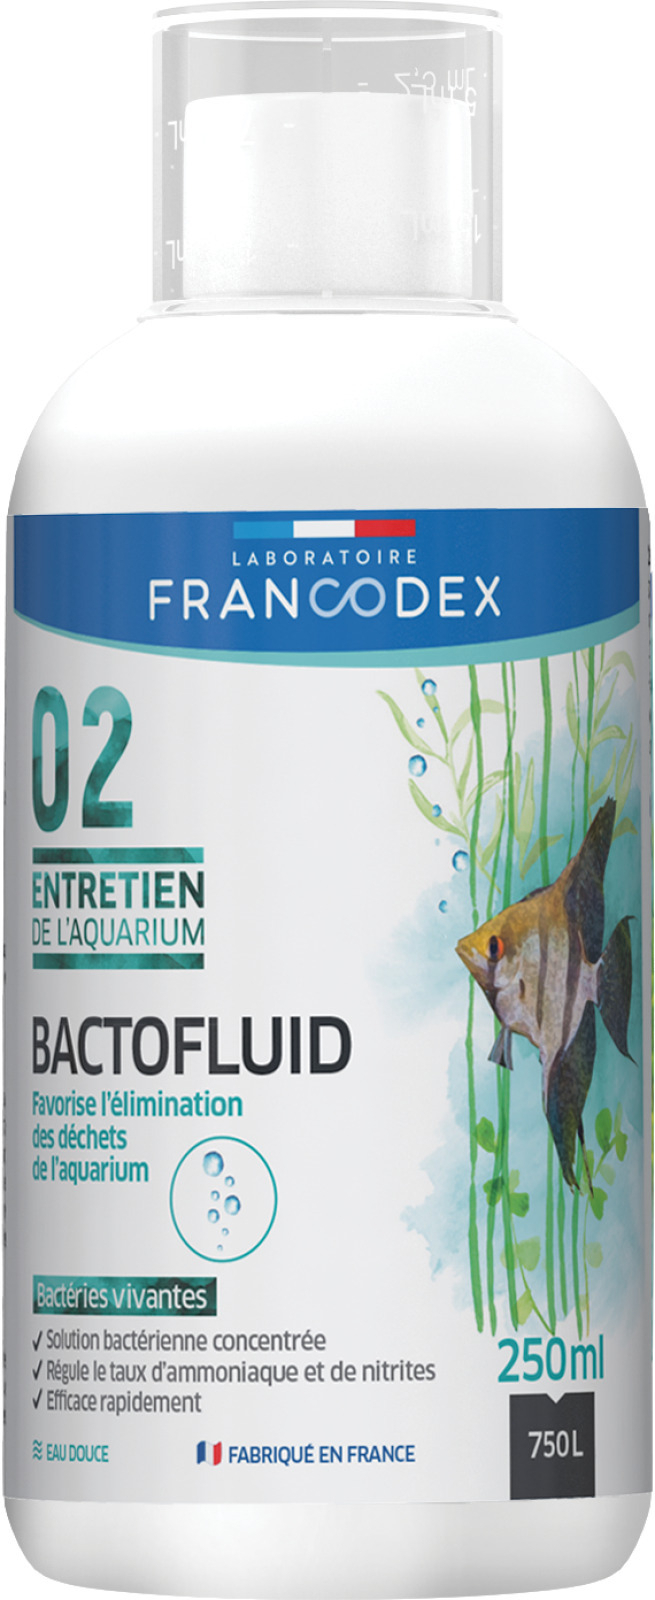 Bactofluid entretien de l'aquarium FRANCODEX